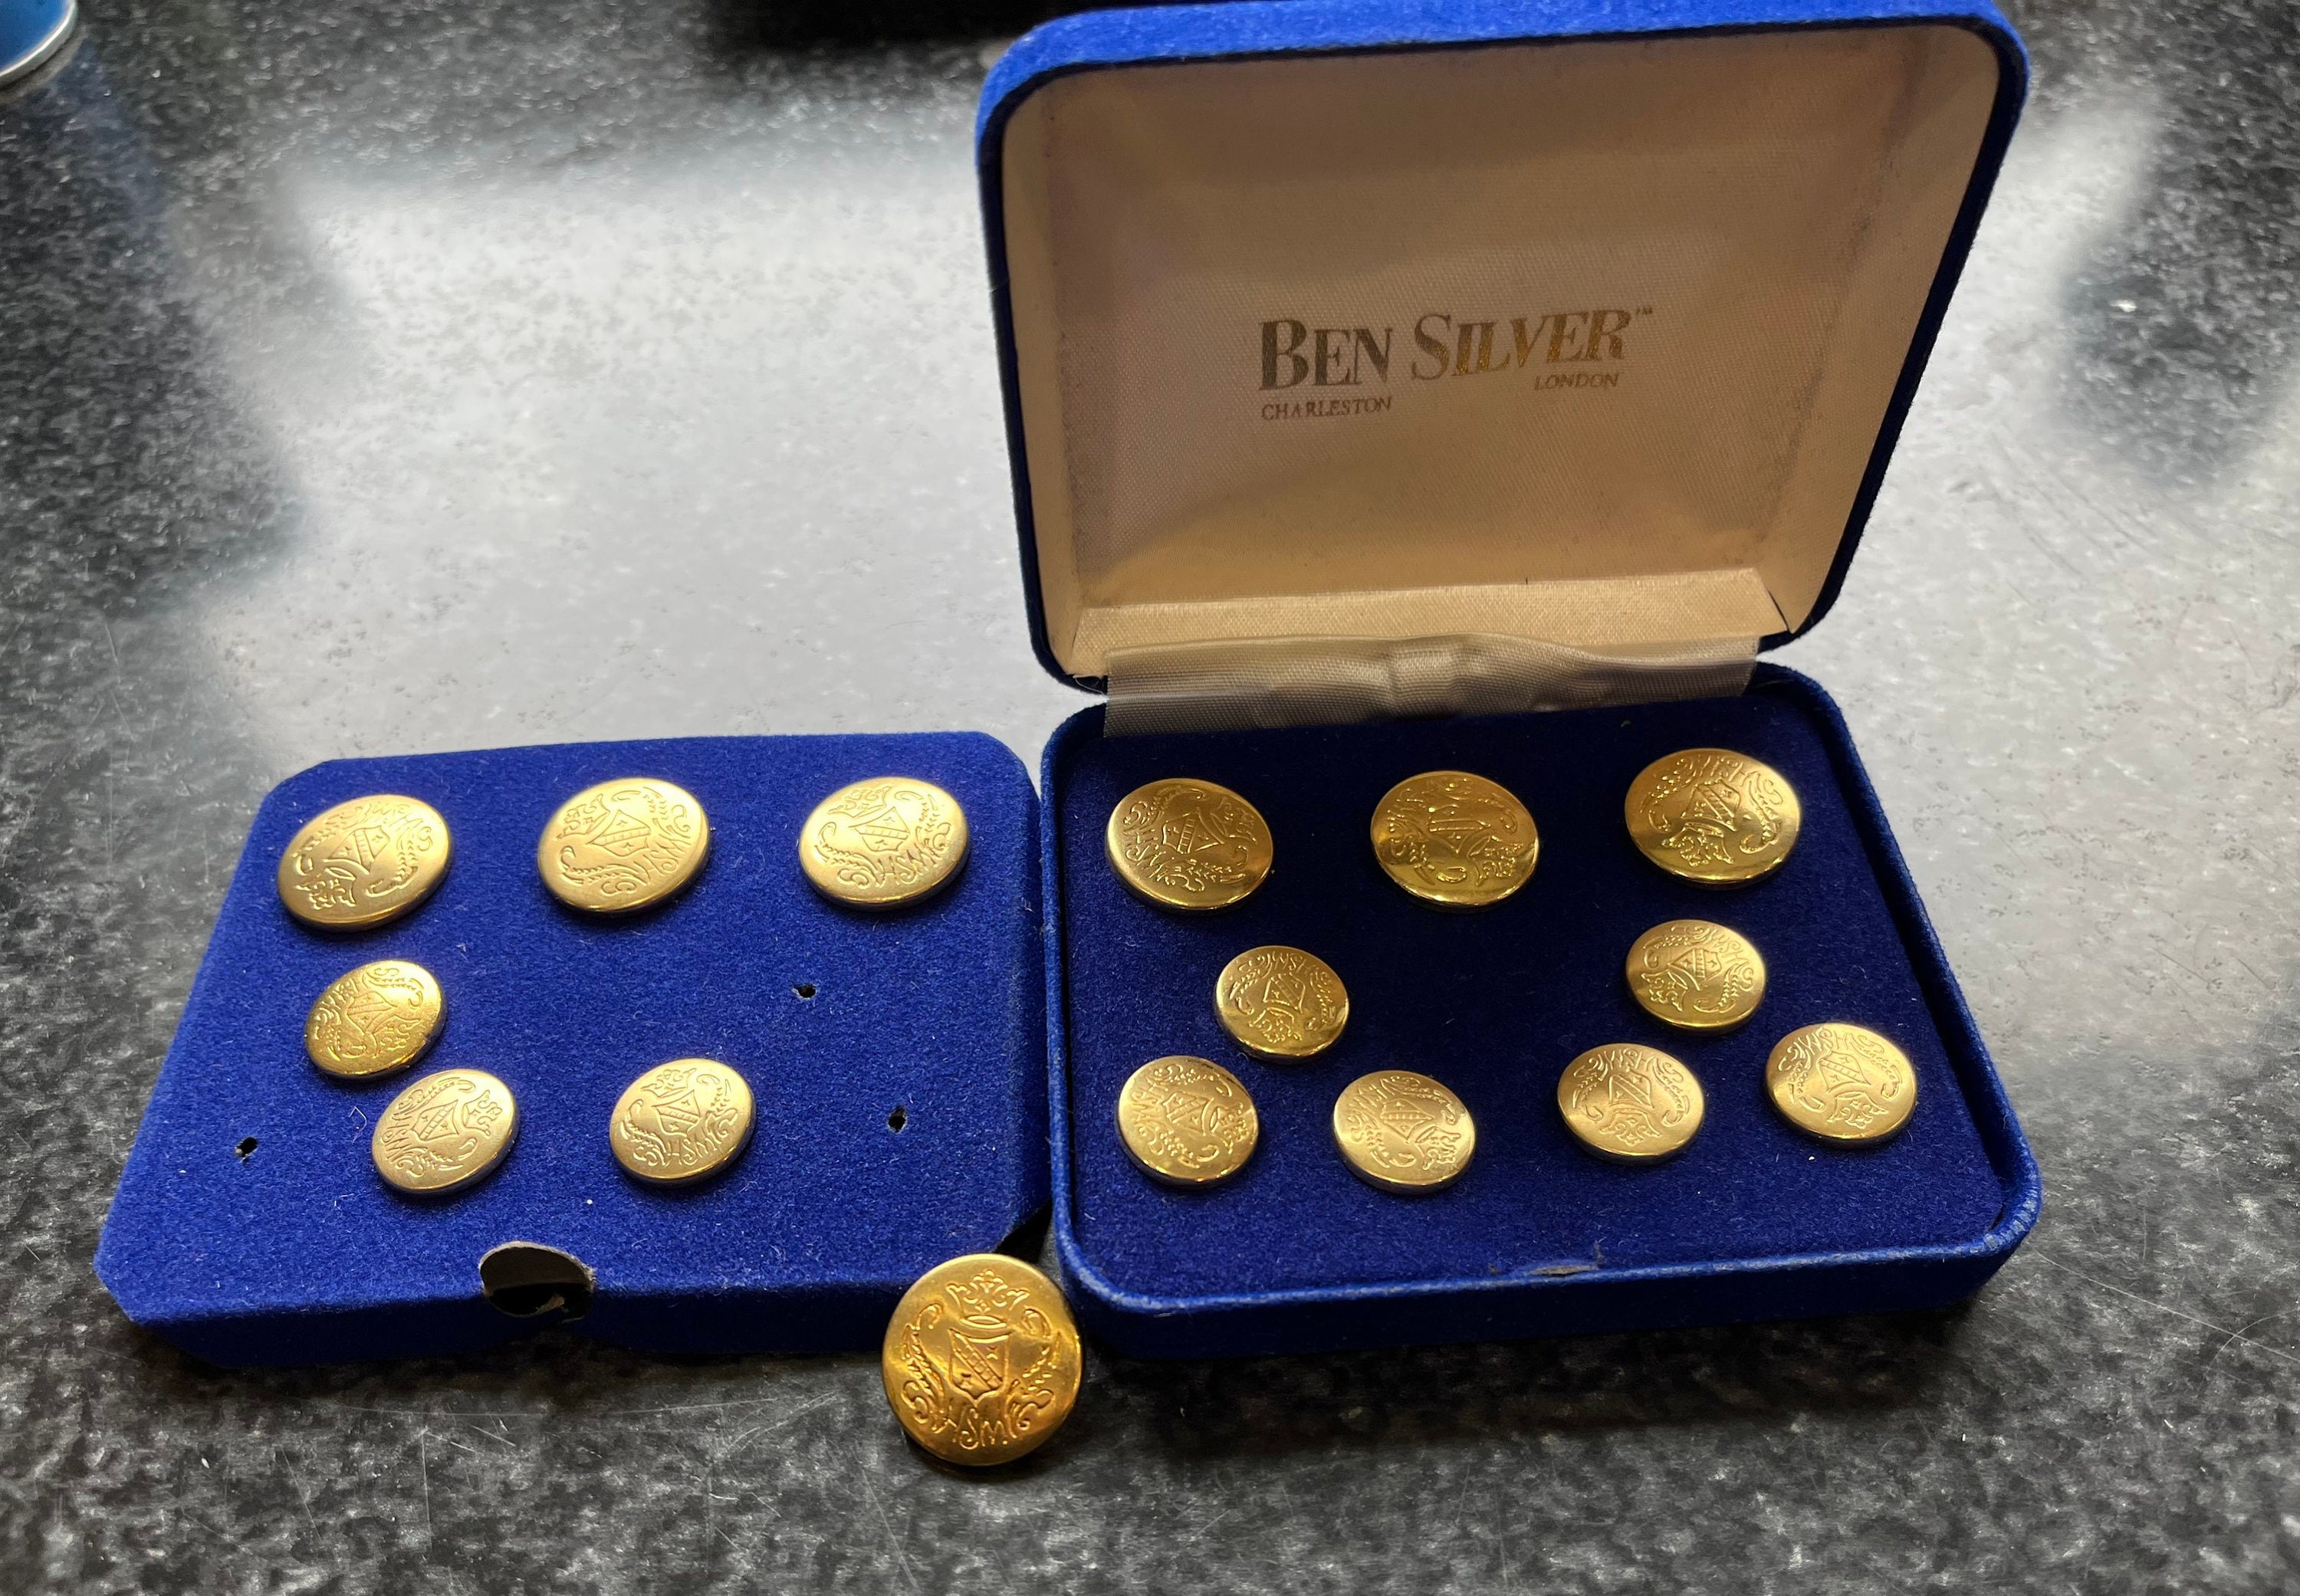 Monogram Blazer Buttons - The Ben Silver Collection